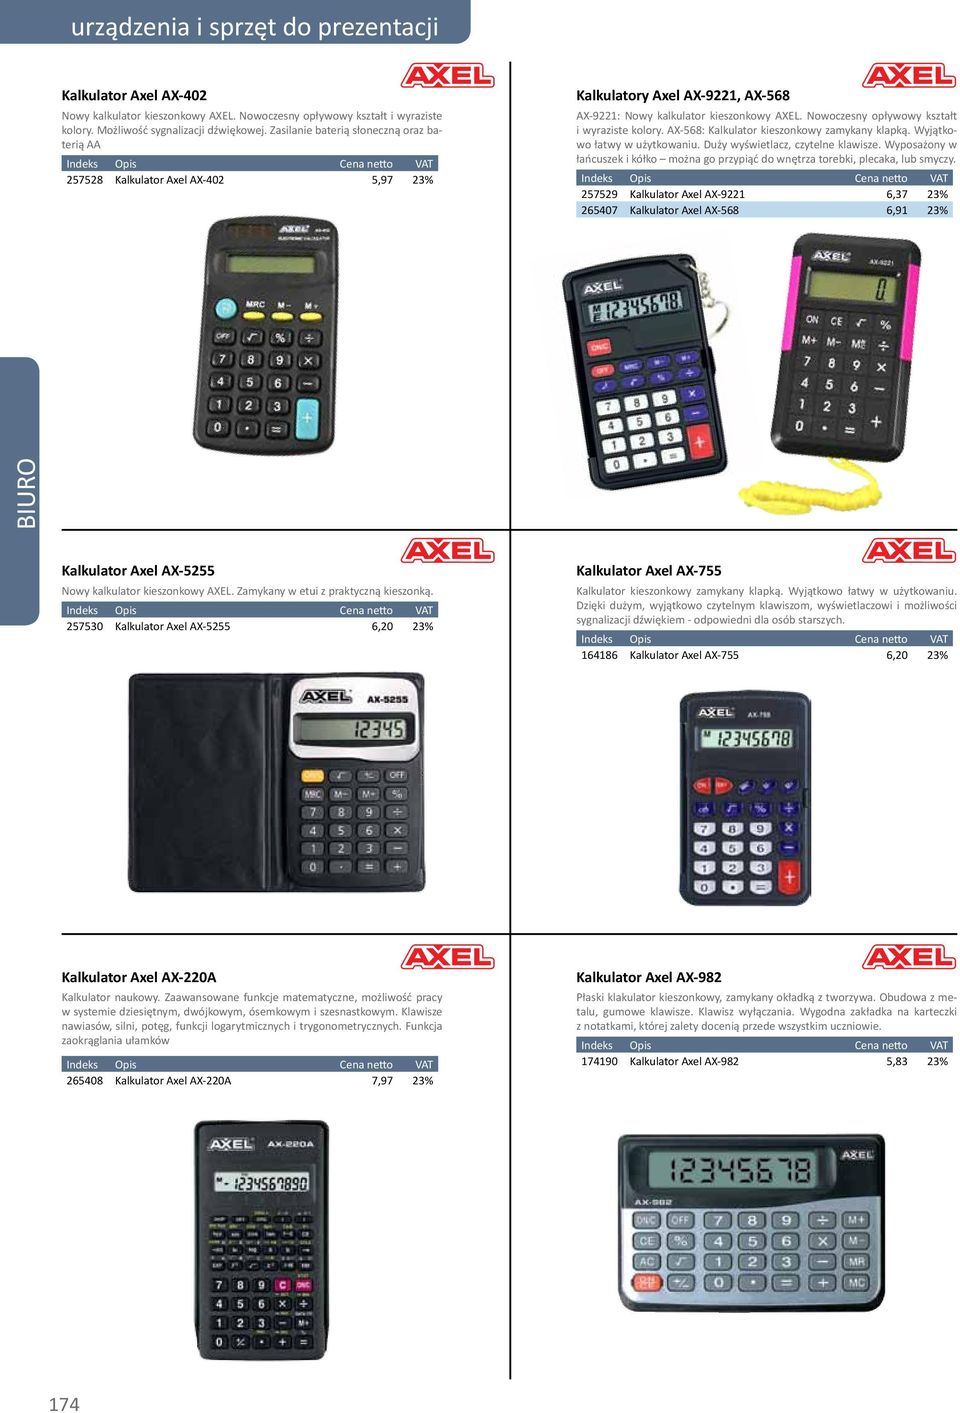 Nowoczesny opływowy kształt i wyraziste kolory. AX-568: Kalkulator kieszonkowy zamykany klapką. Wyjątkowo łatwy w użytkowaniu. Duży wyświetlacz, czytelne klawisze.